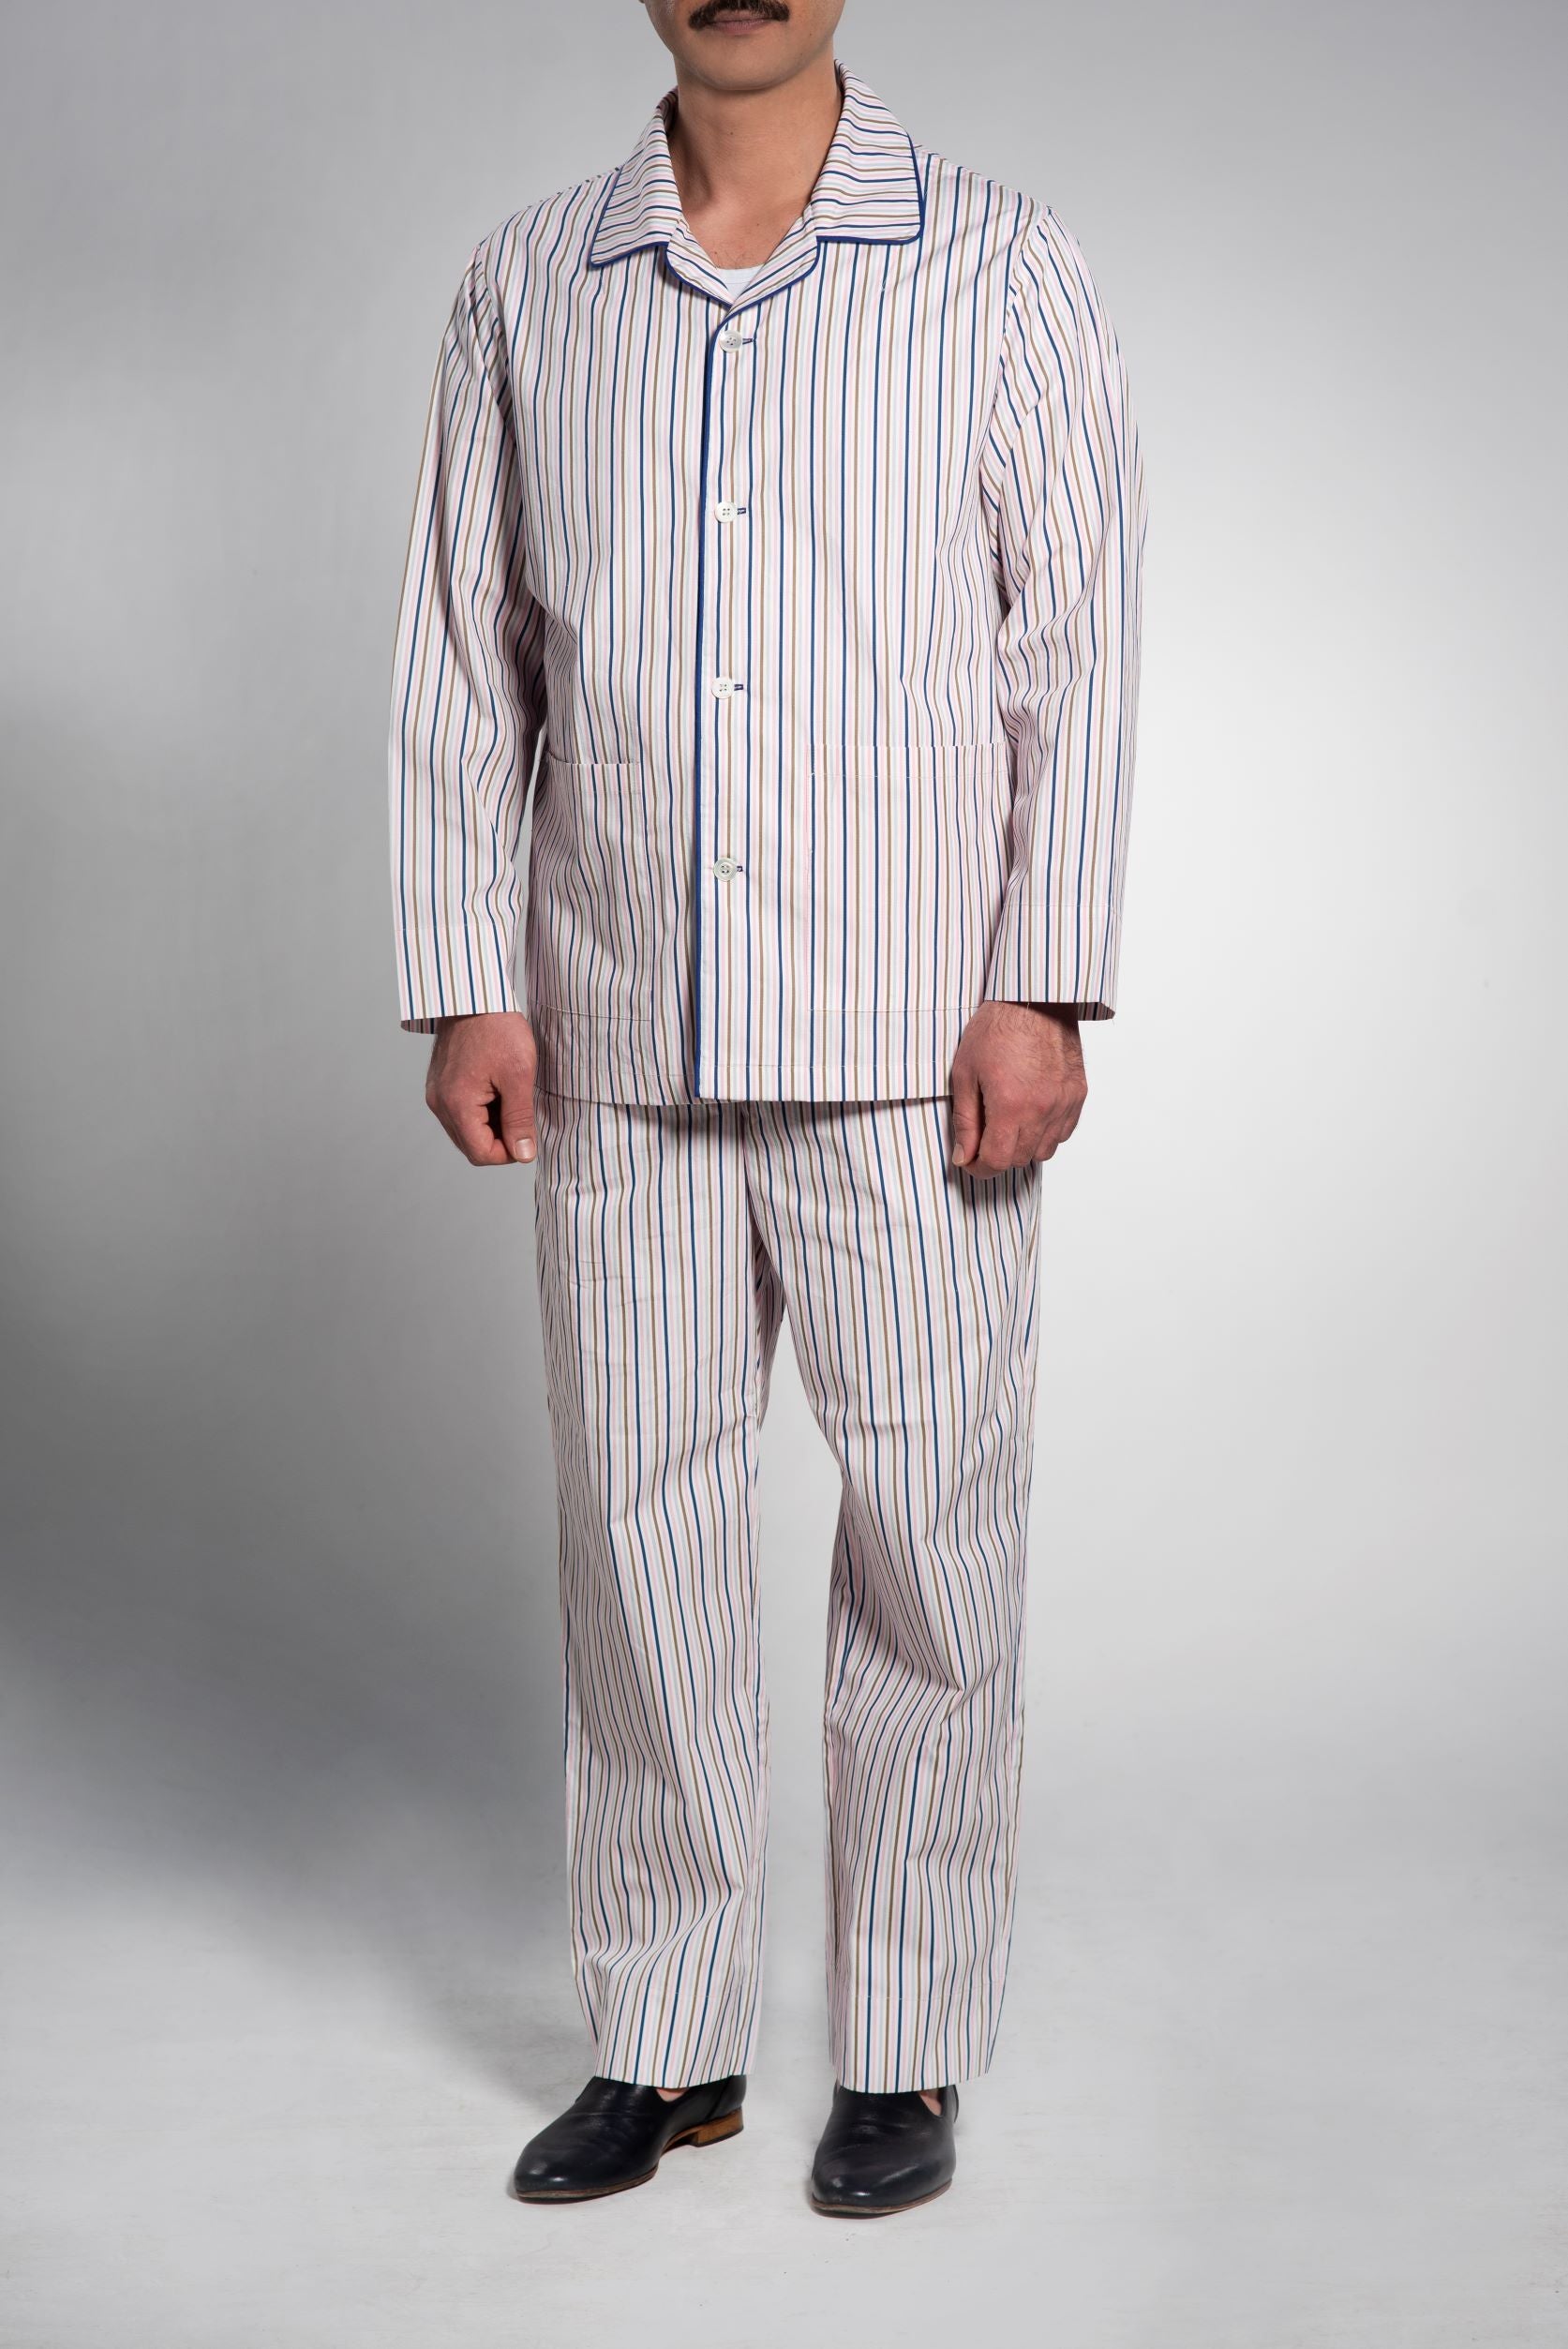 Klassische Herren Pyjamas Baumwolle-Popeline mit Streifen